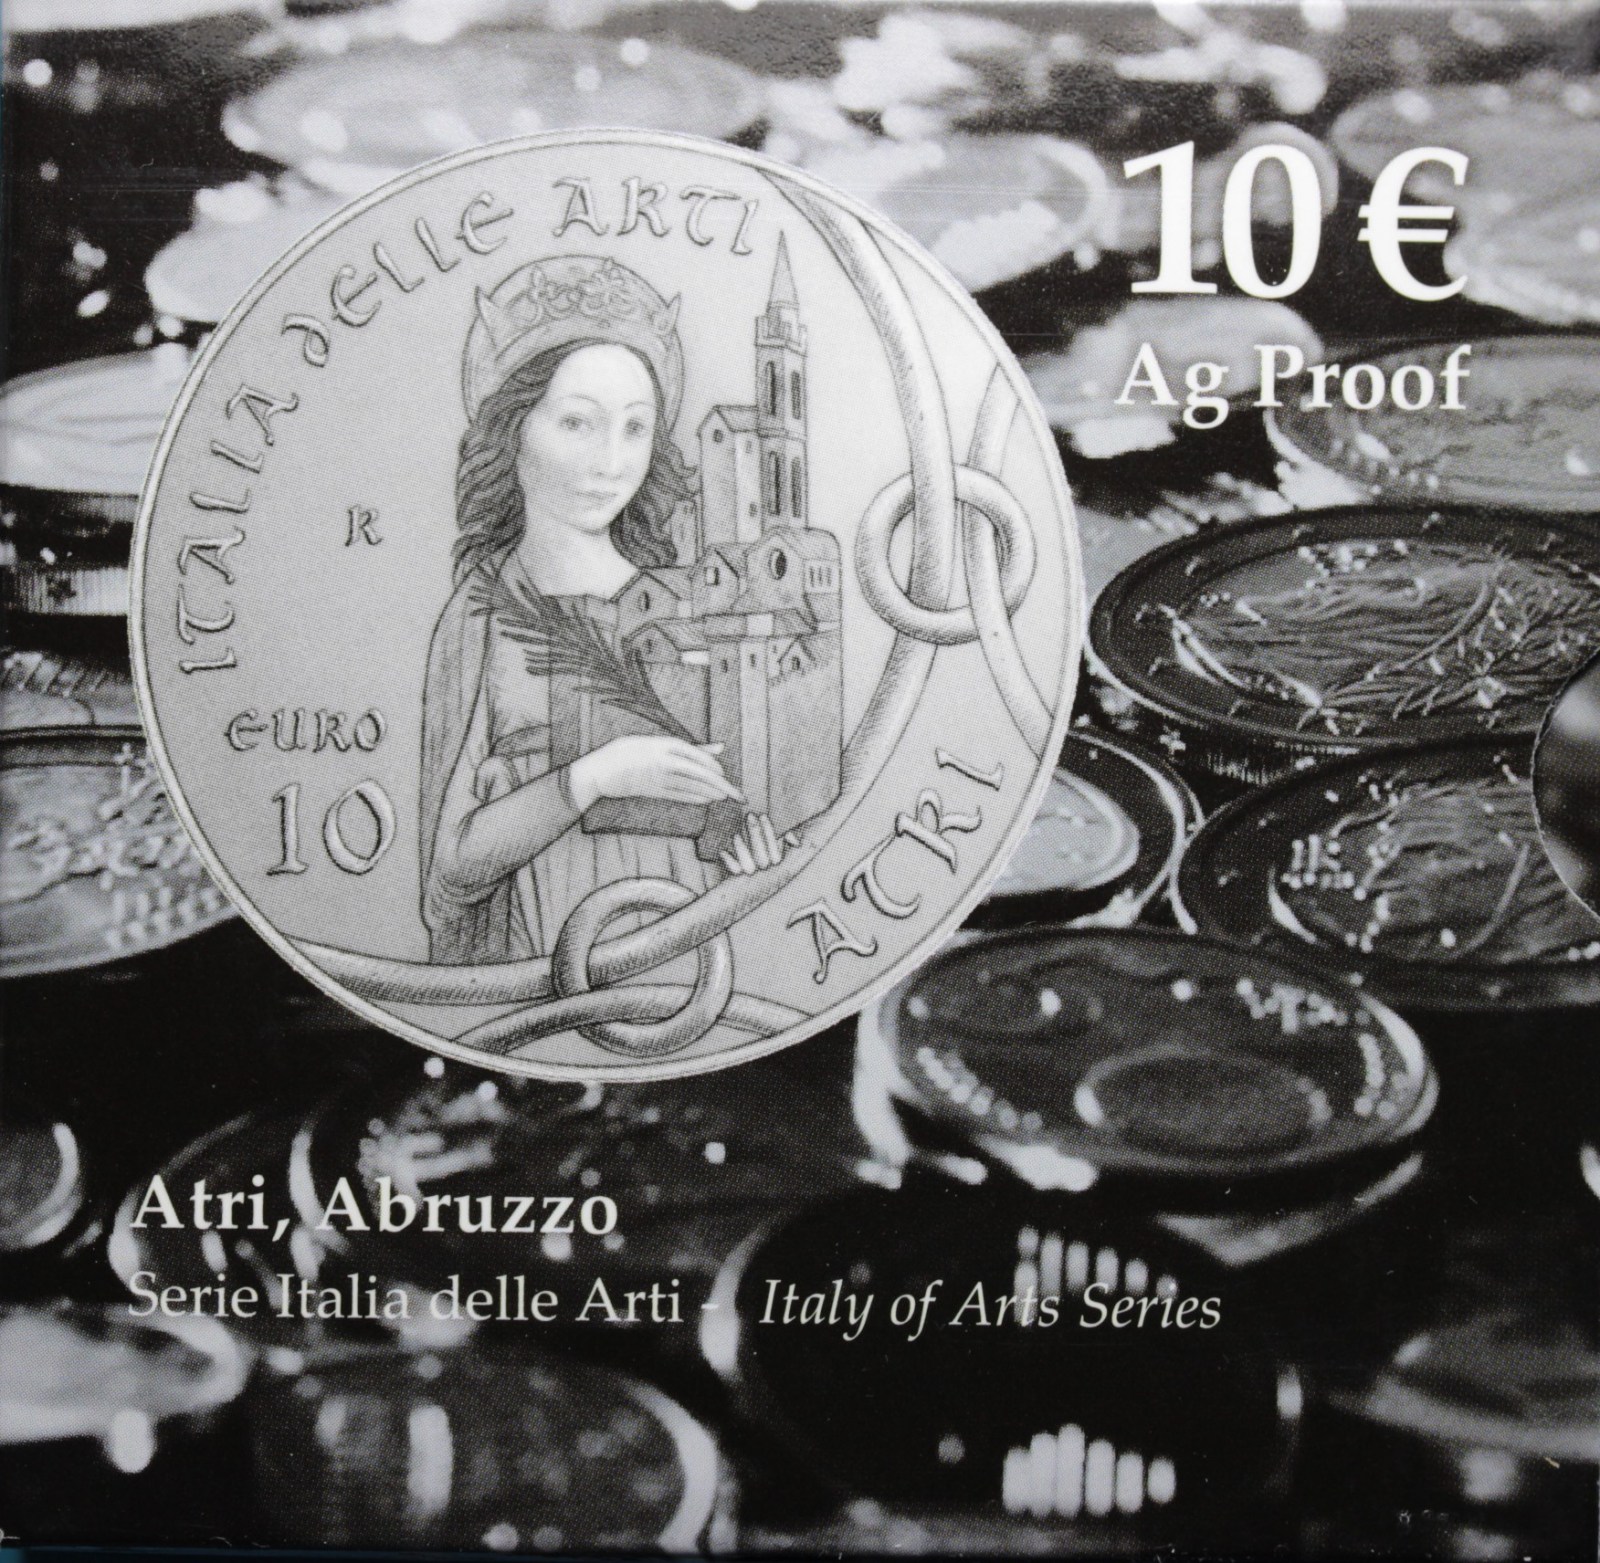 ITALIA 10 EURO COMMEMORATIVO 2014 ATRI ABRUZZO PROOF SCATOLA E GARANZIA